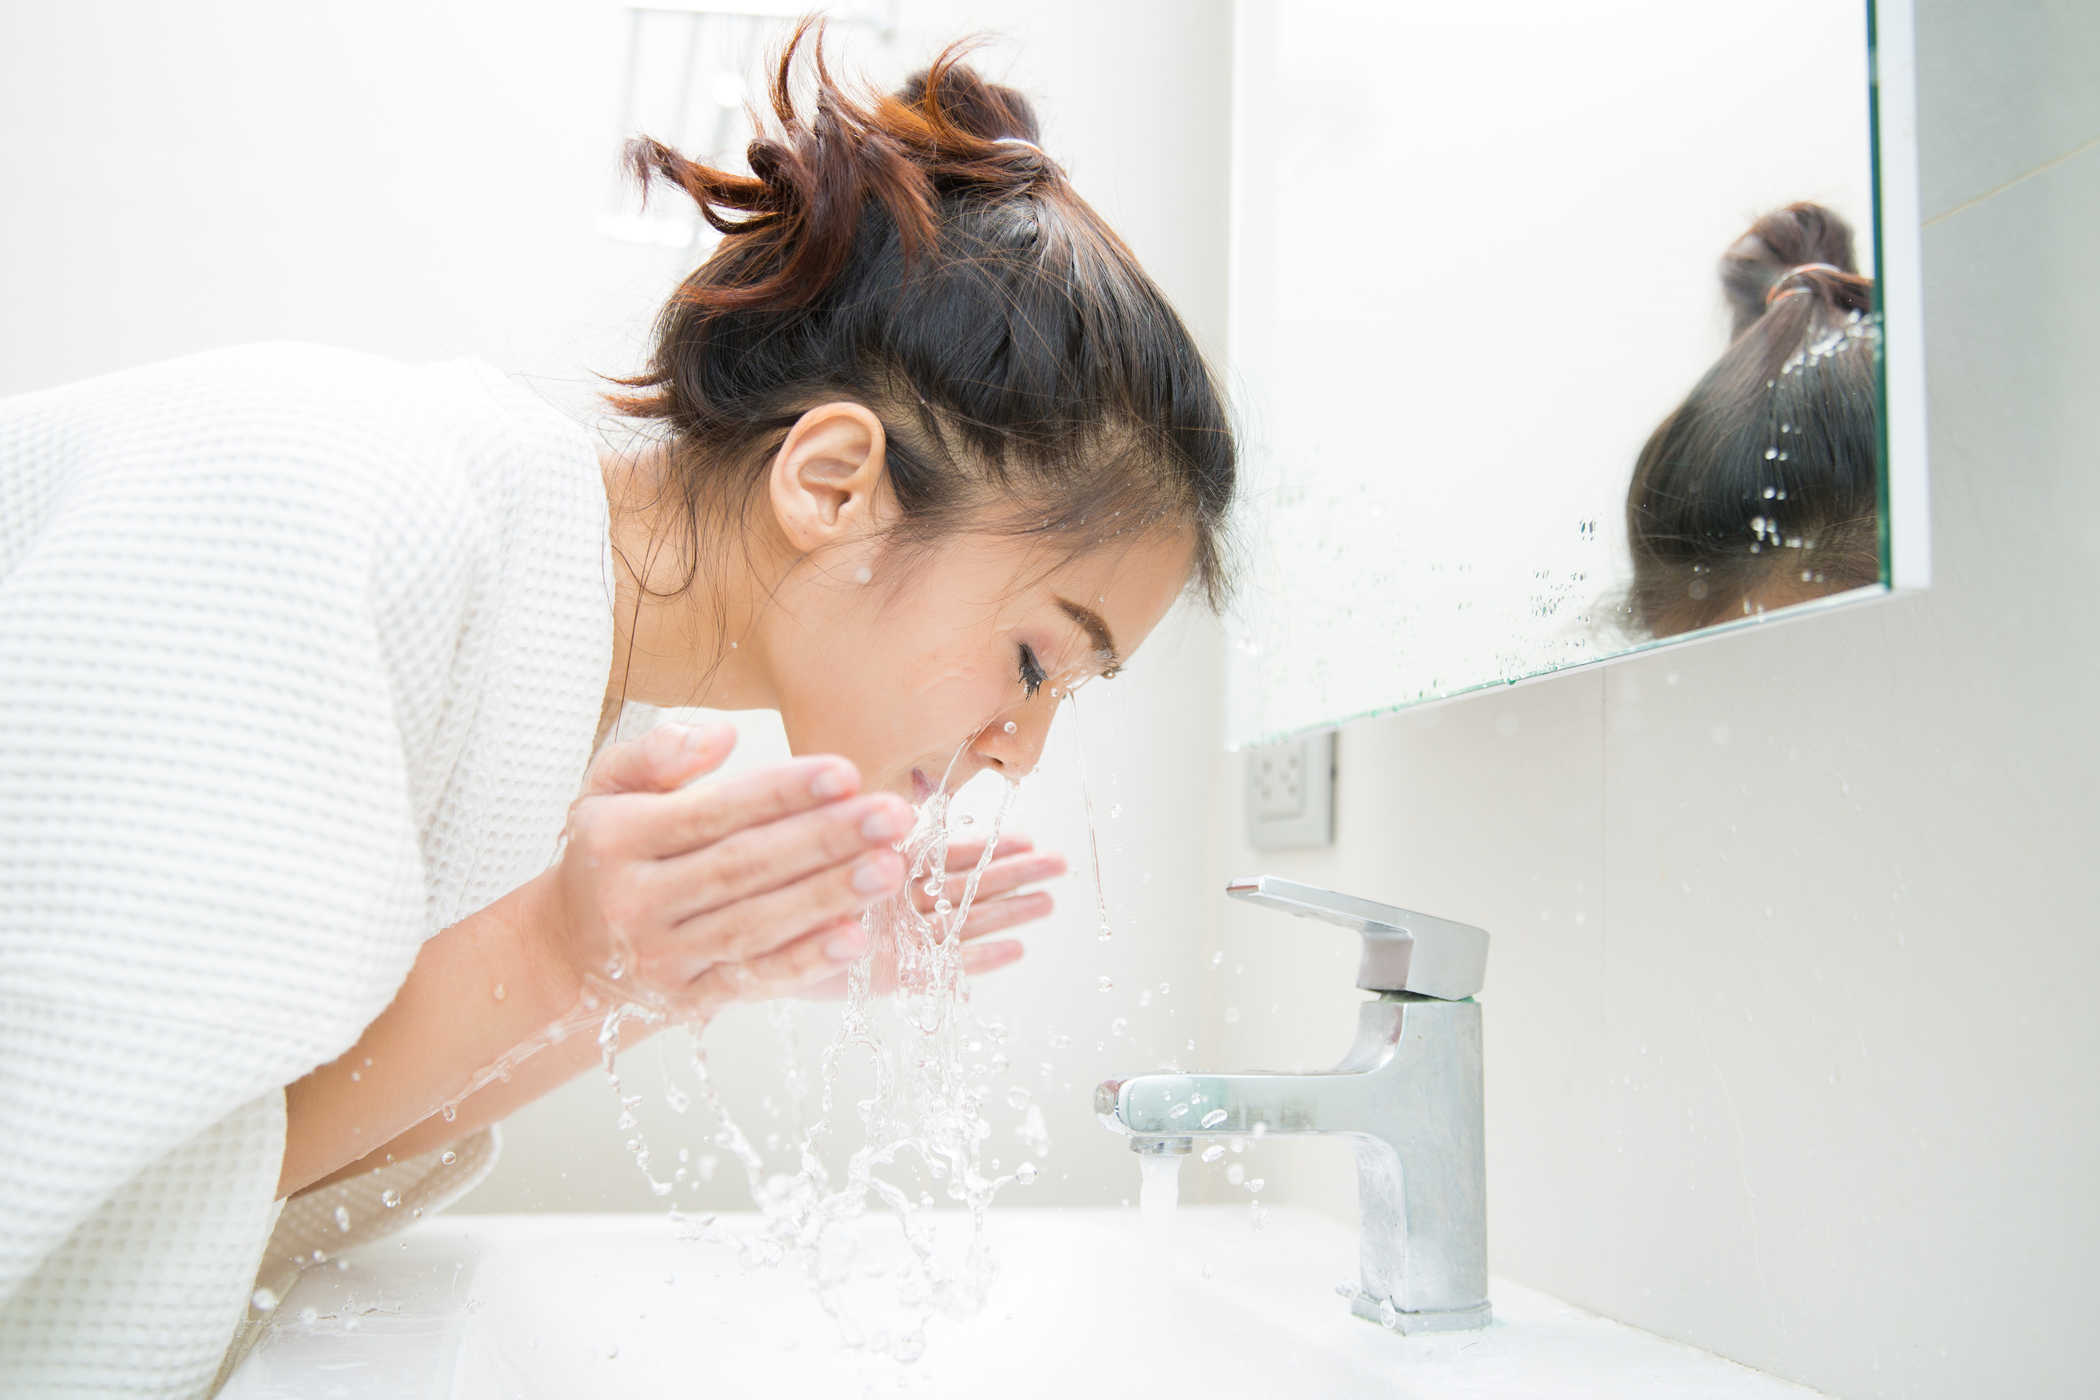   Rửa mặt với nước lạnh giúp bạn tỉnh táo hơn  